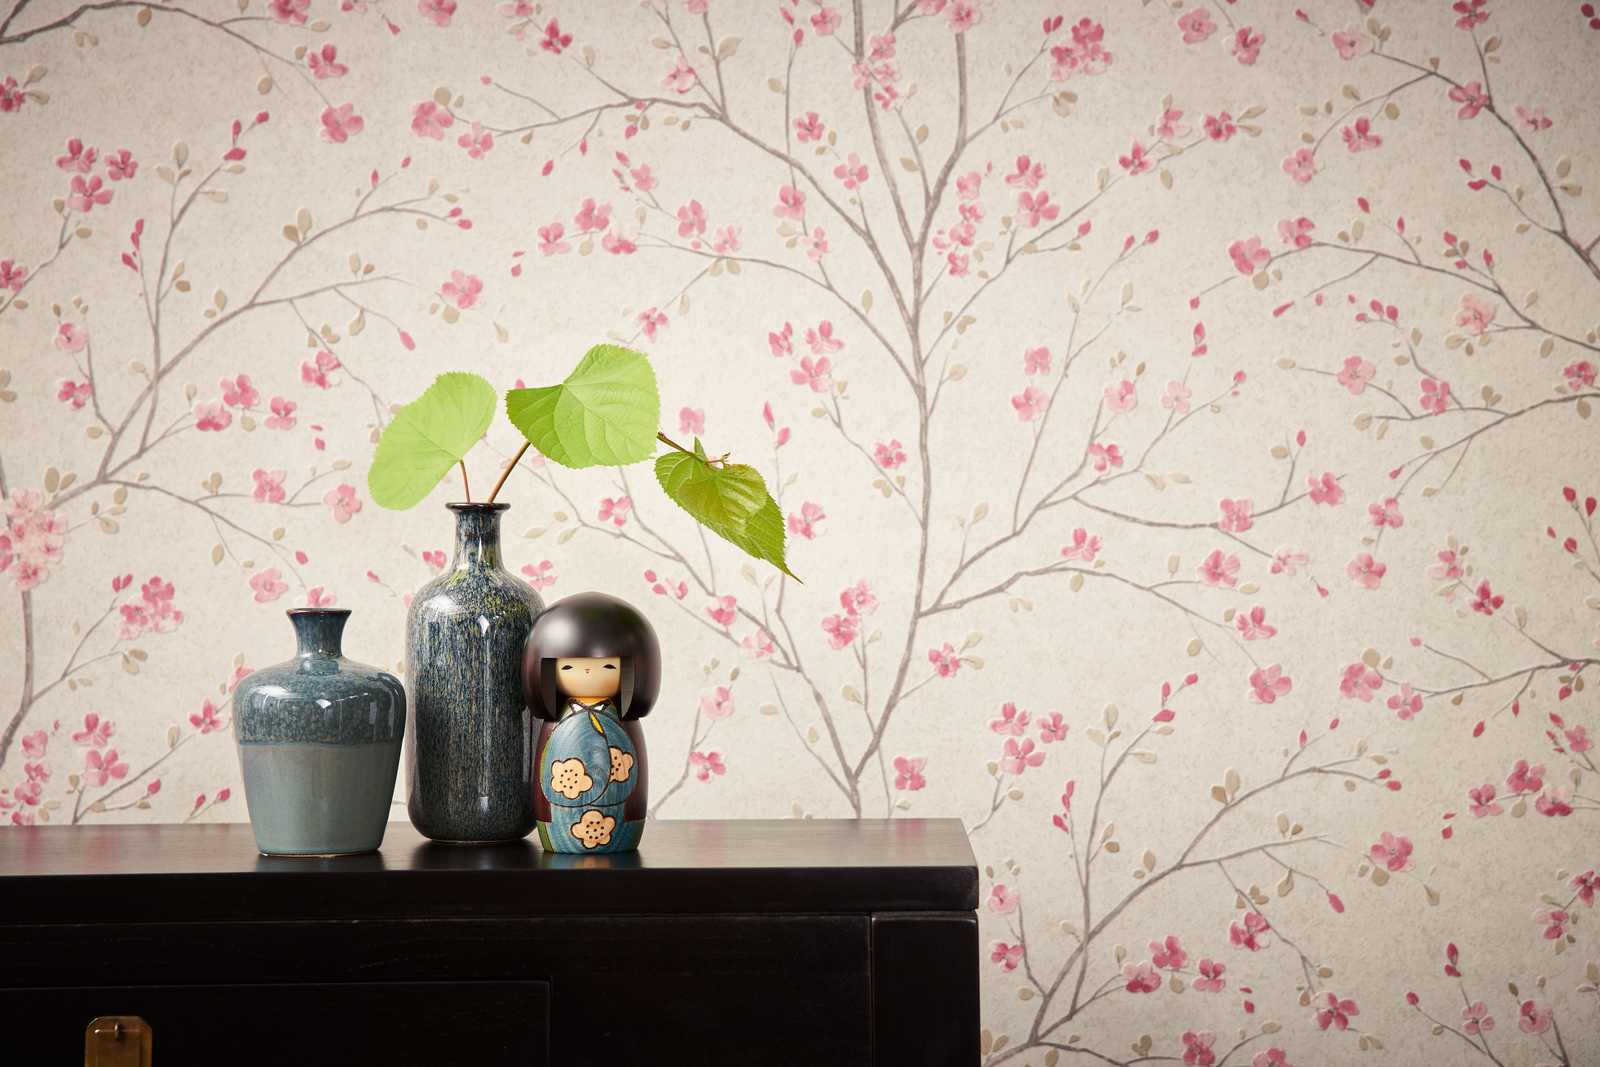             Vliesbehang met kersenbloesemmotief in Aziatische stijl - bruin, roze, wit
        